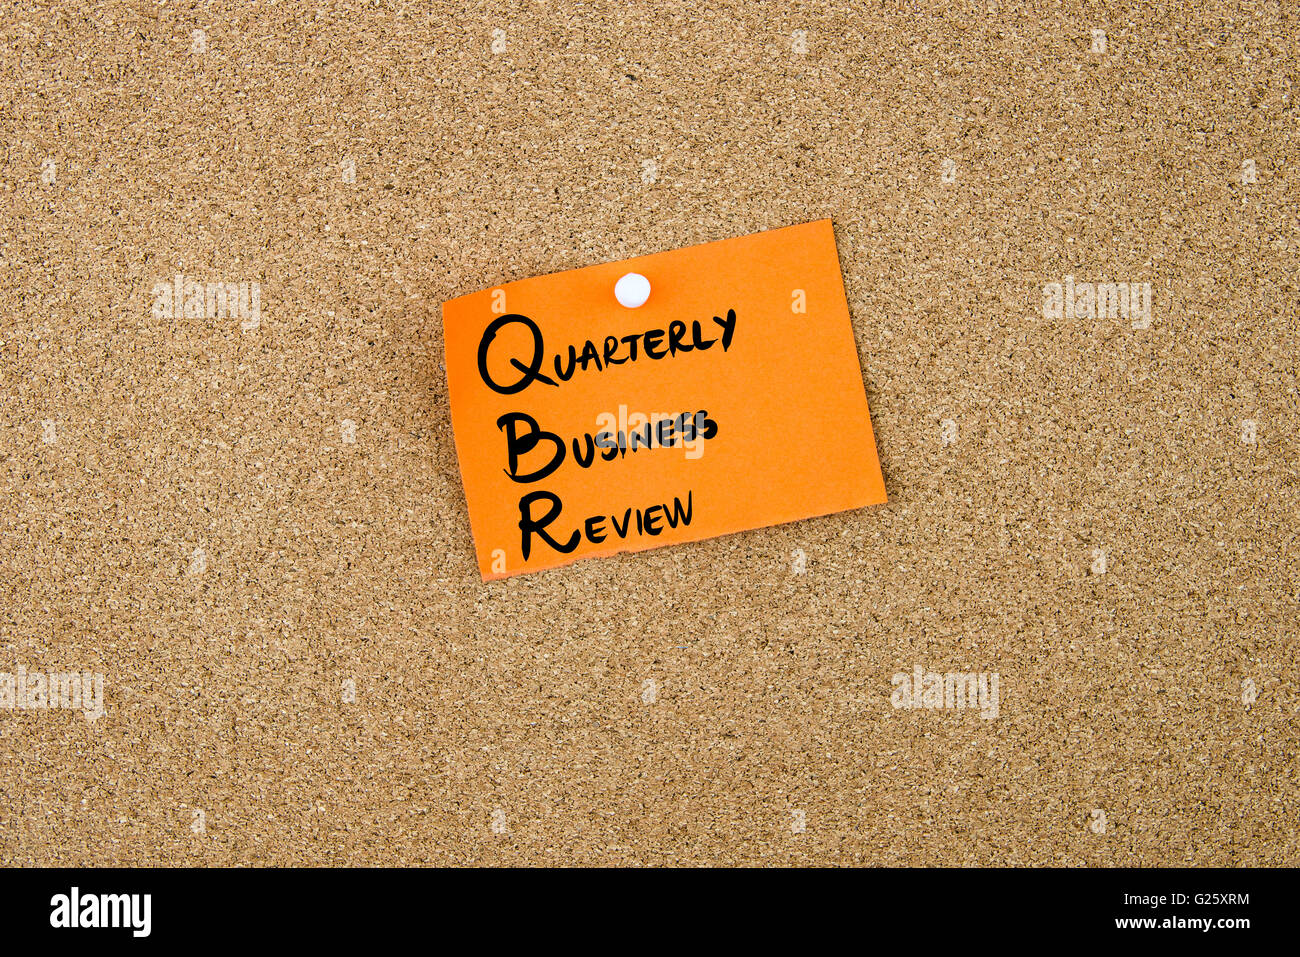 Kundenbesprechung als vierteljährliche BUSINESS REVIEW geschrieben am orange Papier-Schuldbrief auf Pinnwand mit weißen Reißzwecken angeheftet kopieren Speicherplatz Stockfoto